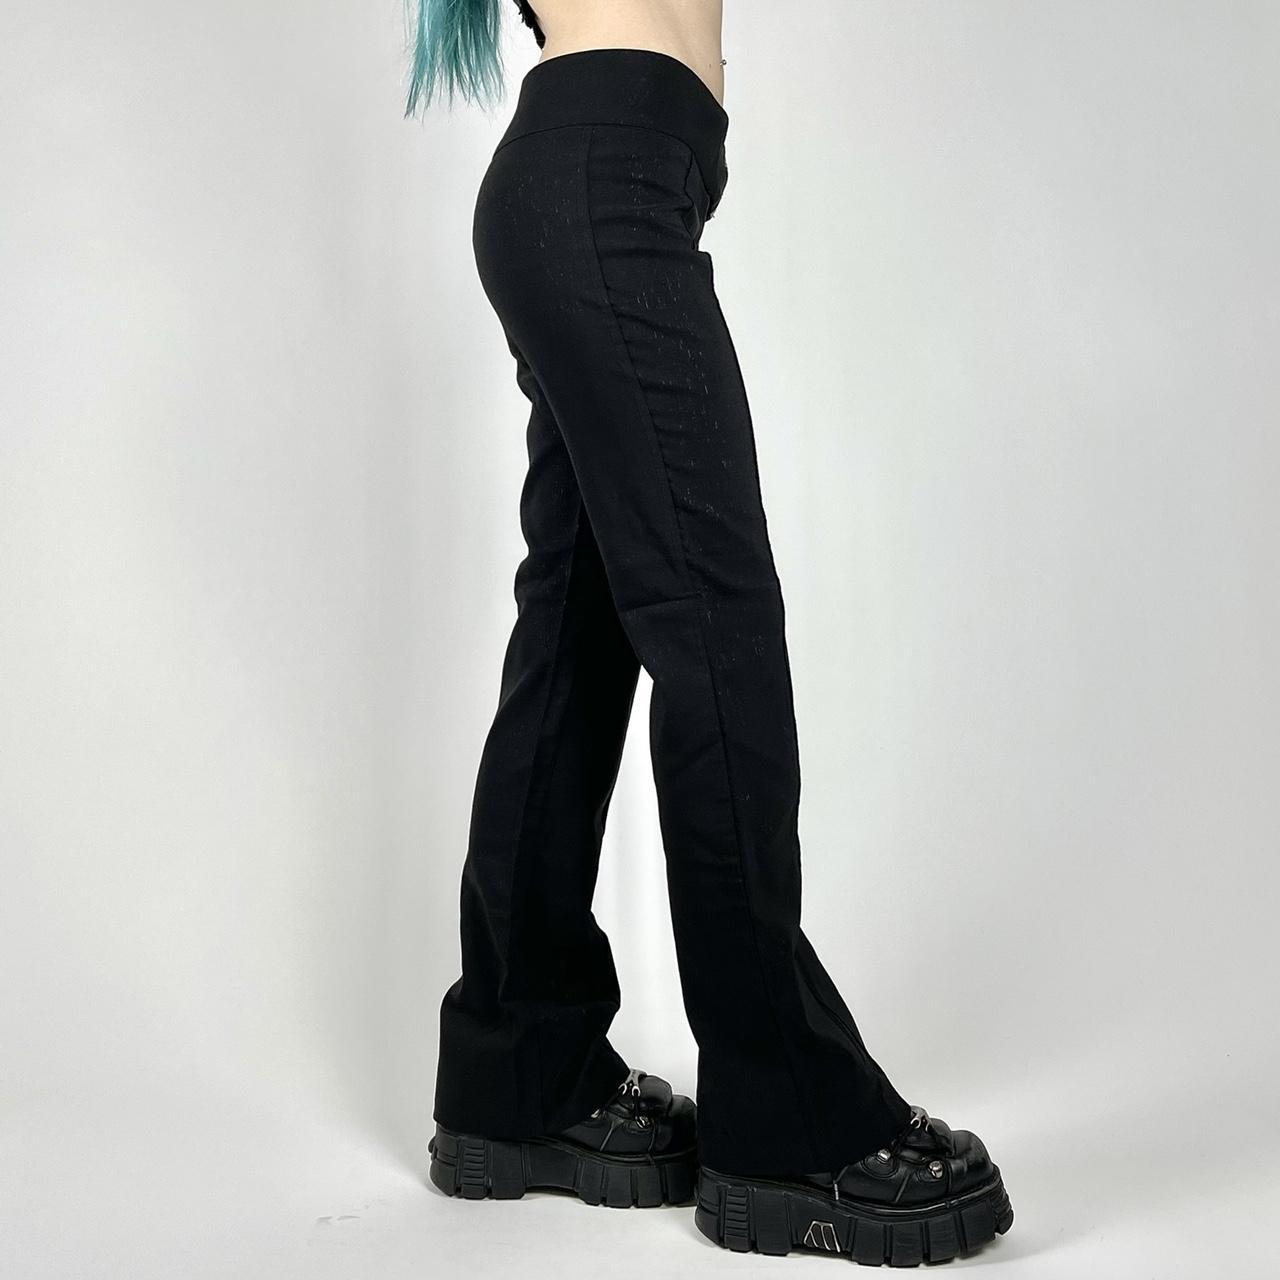 90s/Y2K Black Shimmer Flare Pants by Event ☆ Size:... - Depop